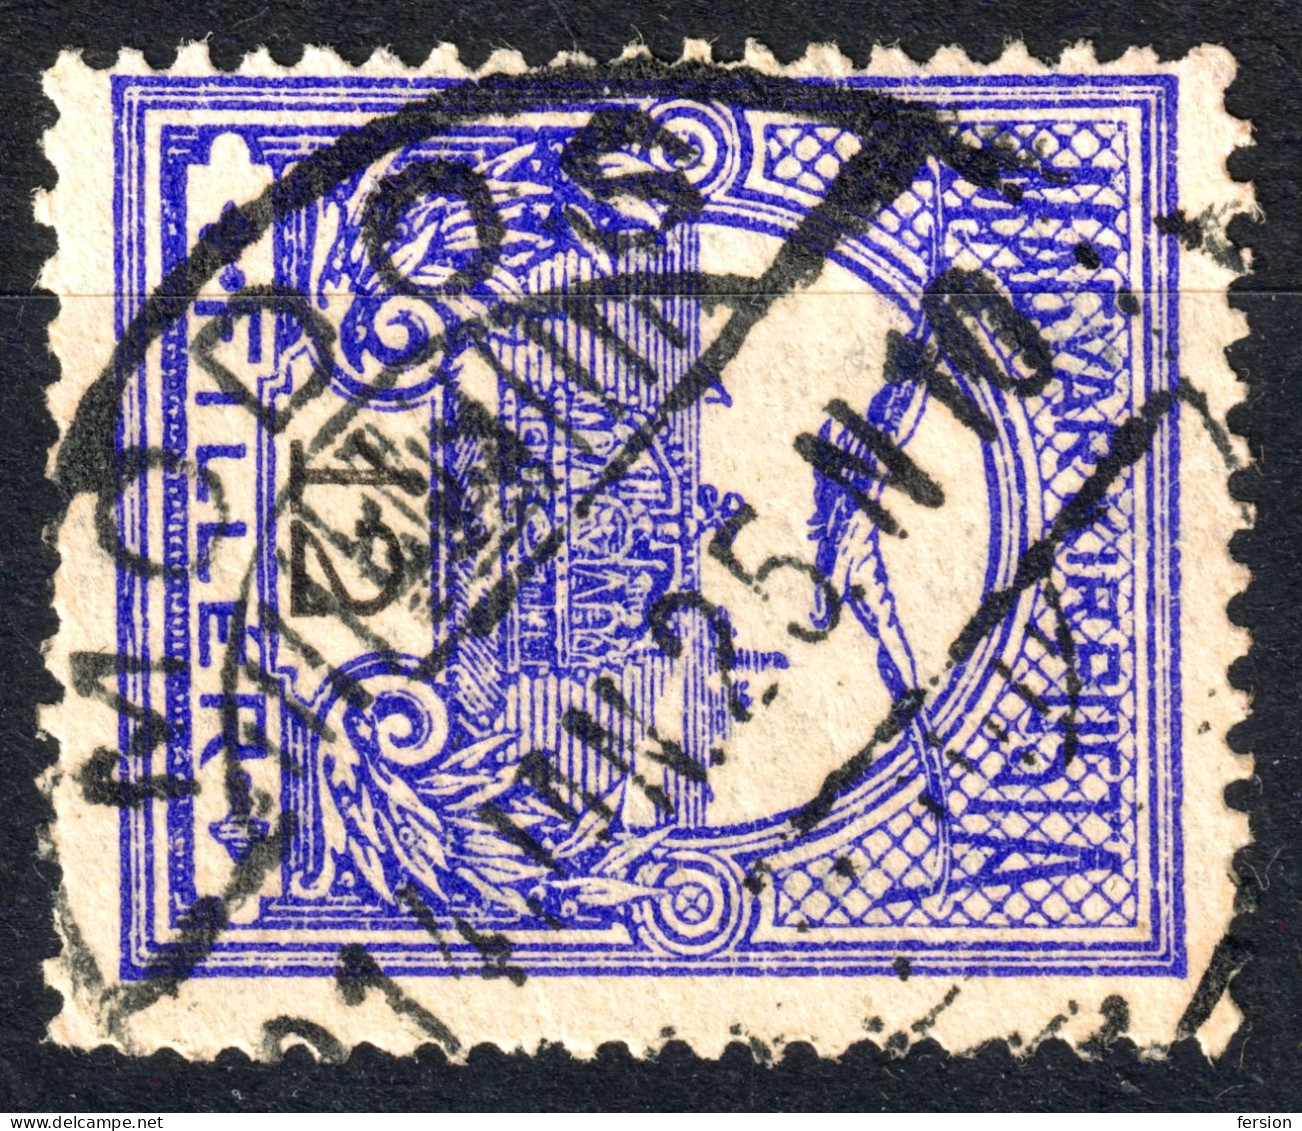 Módos Jaša Tomić Postmark TURUL Crown 1914 Hungary SERBIA Vojvodina Torontál BANAT County KuK - 12 Fill - Vorphilatelie